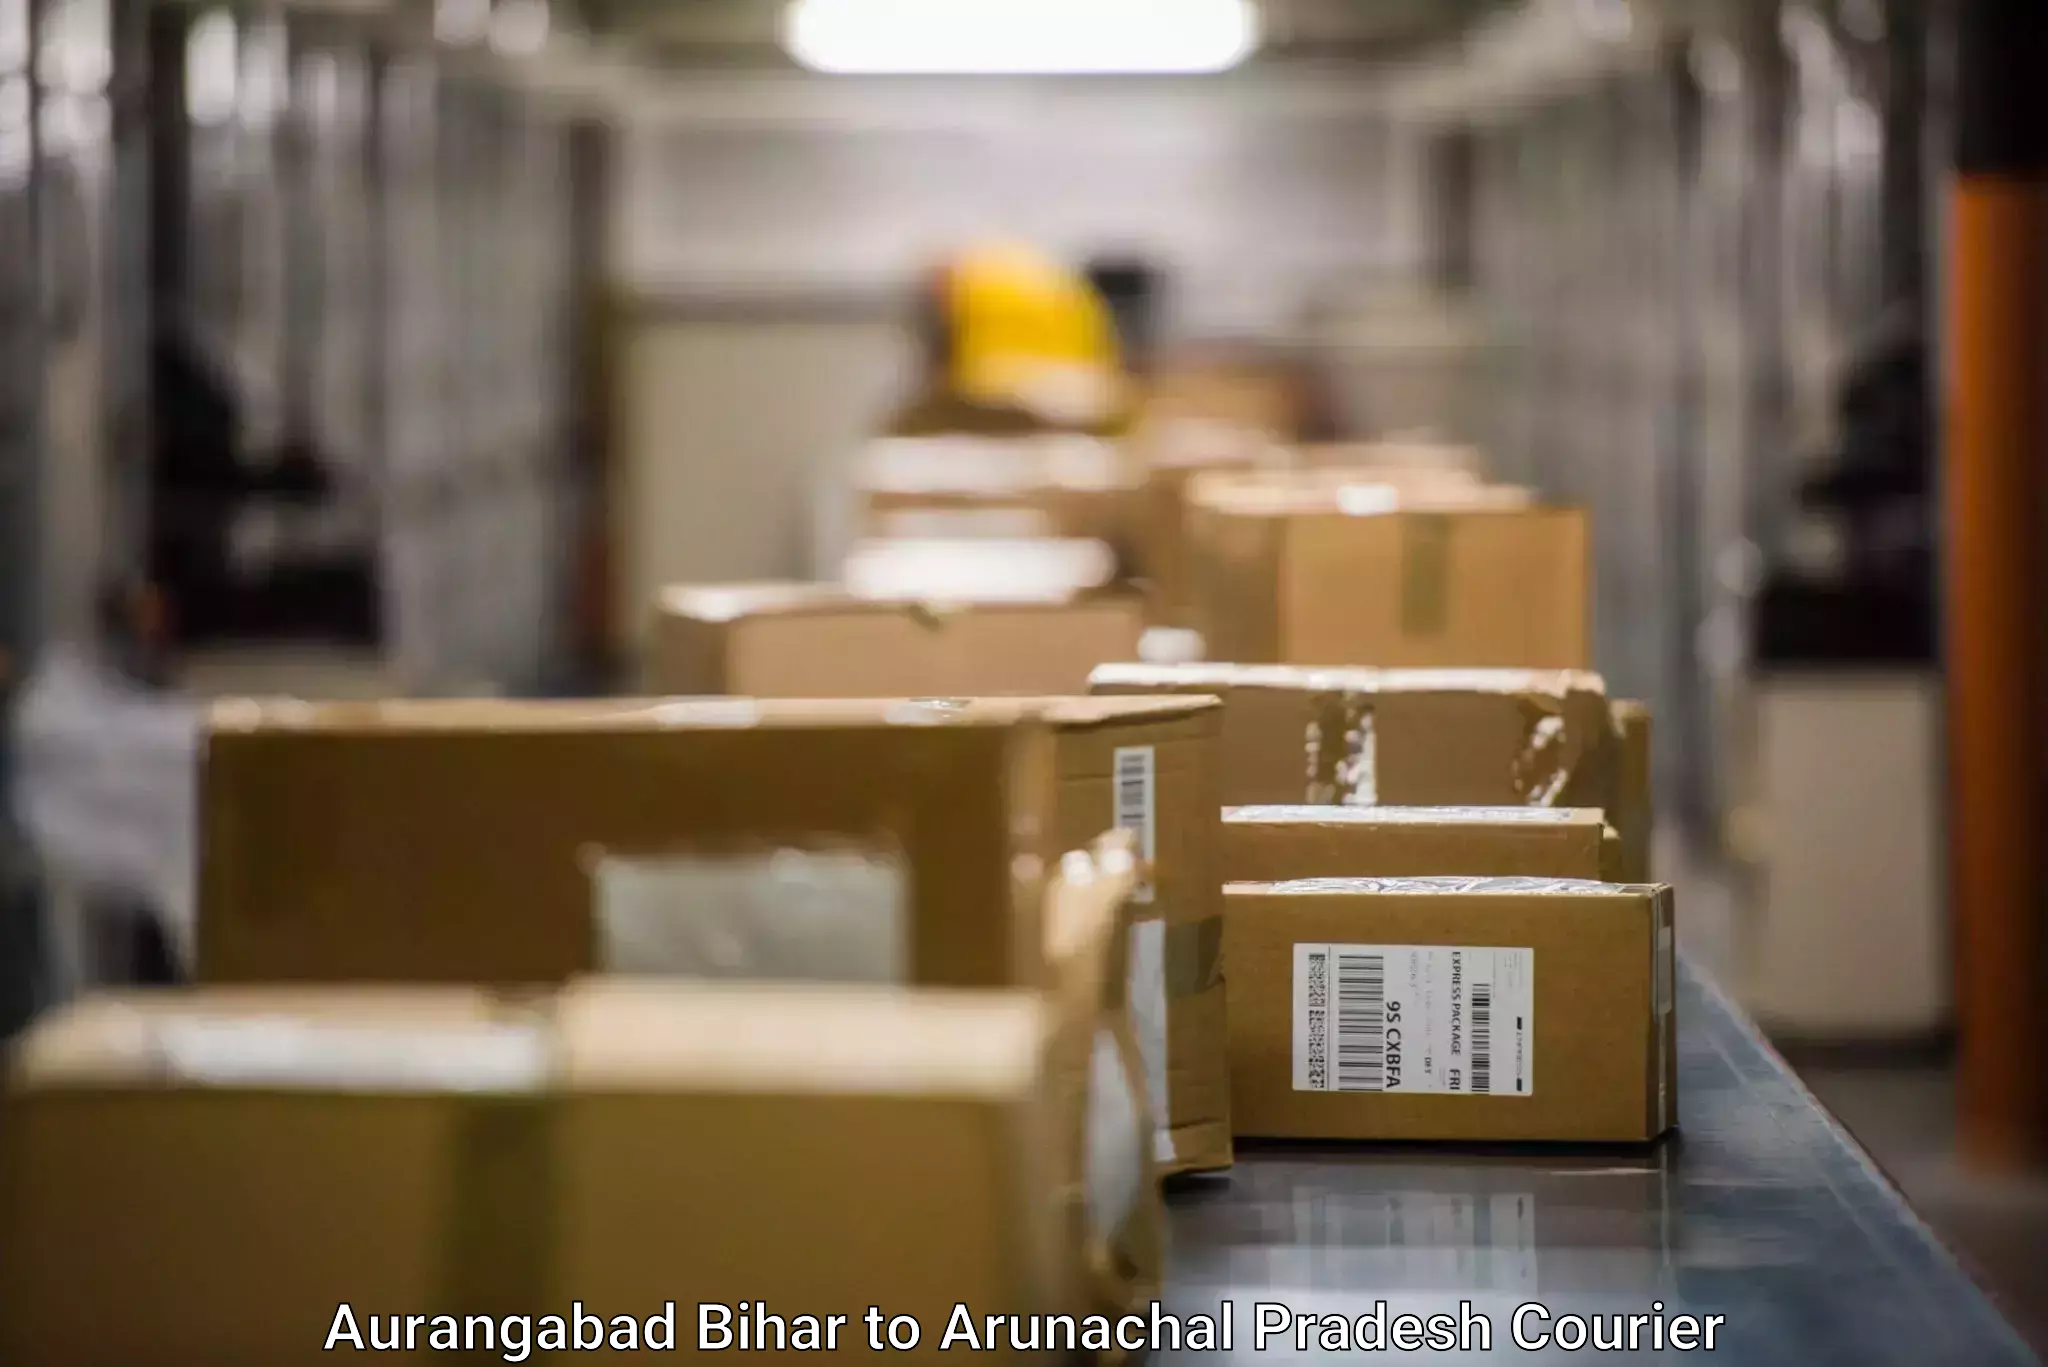 Short distance delivery in Aurangabad Bihar to Pasighat